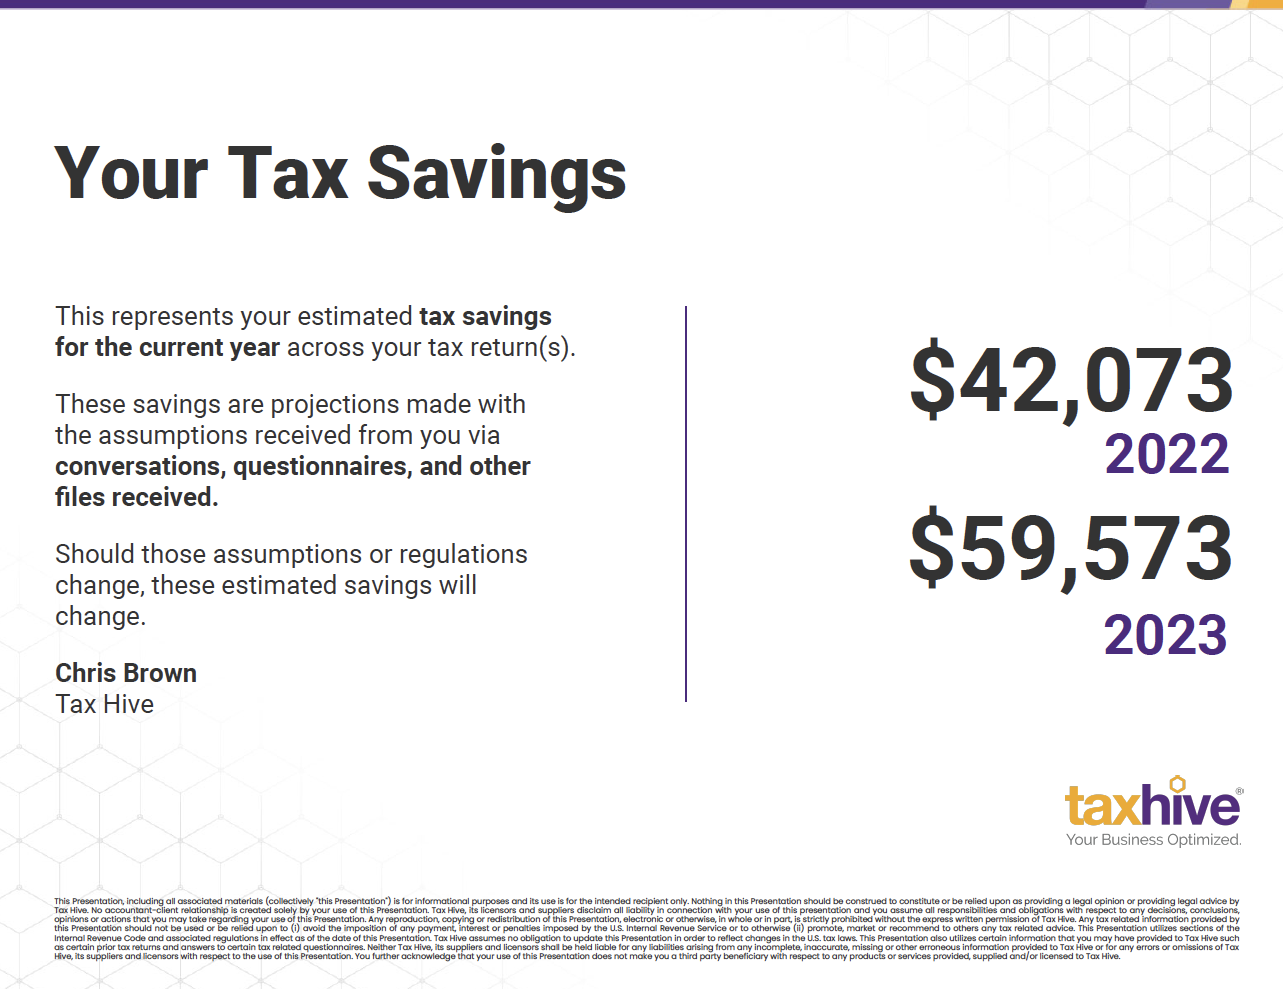 Overall Tax Savings